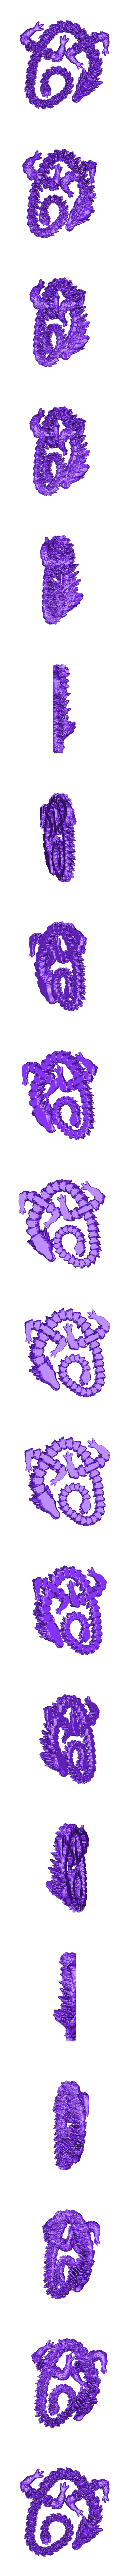 Atlantean Dragon-smaller file size.obj Fichier OBJ Articulated Dragon - Dragon Atlante Flexi・Objet imprimable en 3D à télécharger, MysticSaige